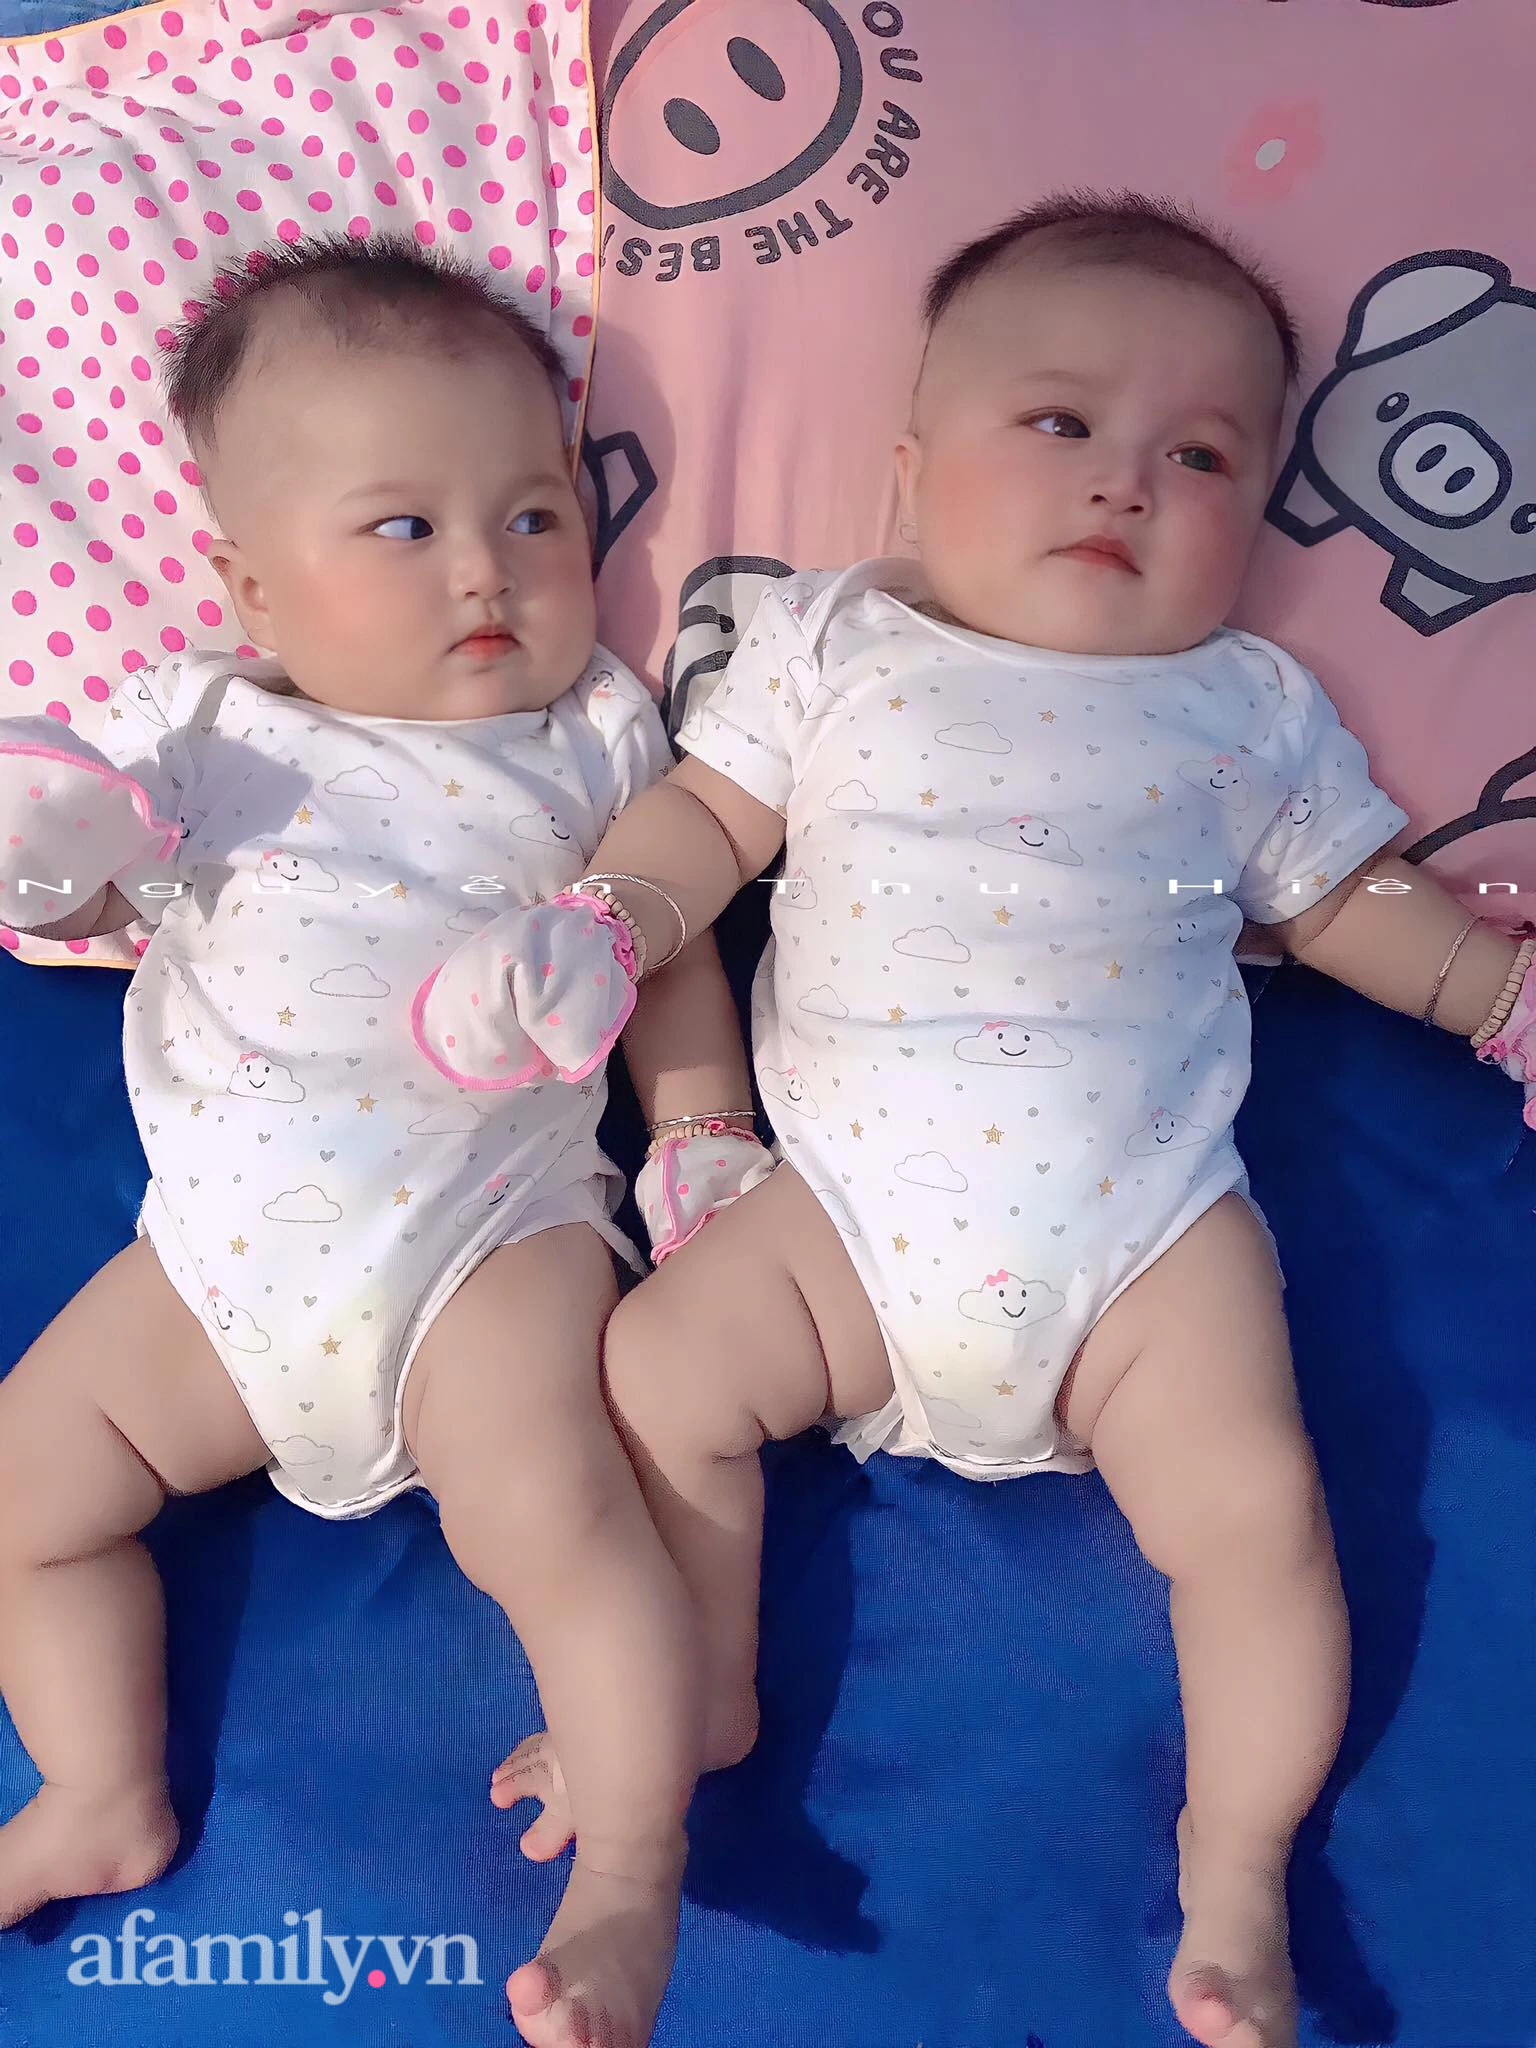 Hai bé gái sinh đôi chào đời với khuôn mặt như búp bê hiện tại thay đổi ra sao? - Ảnh 3.